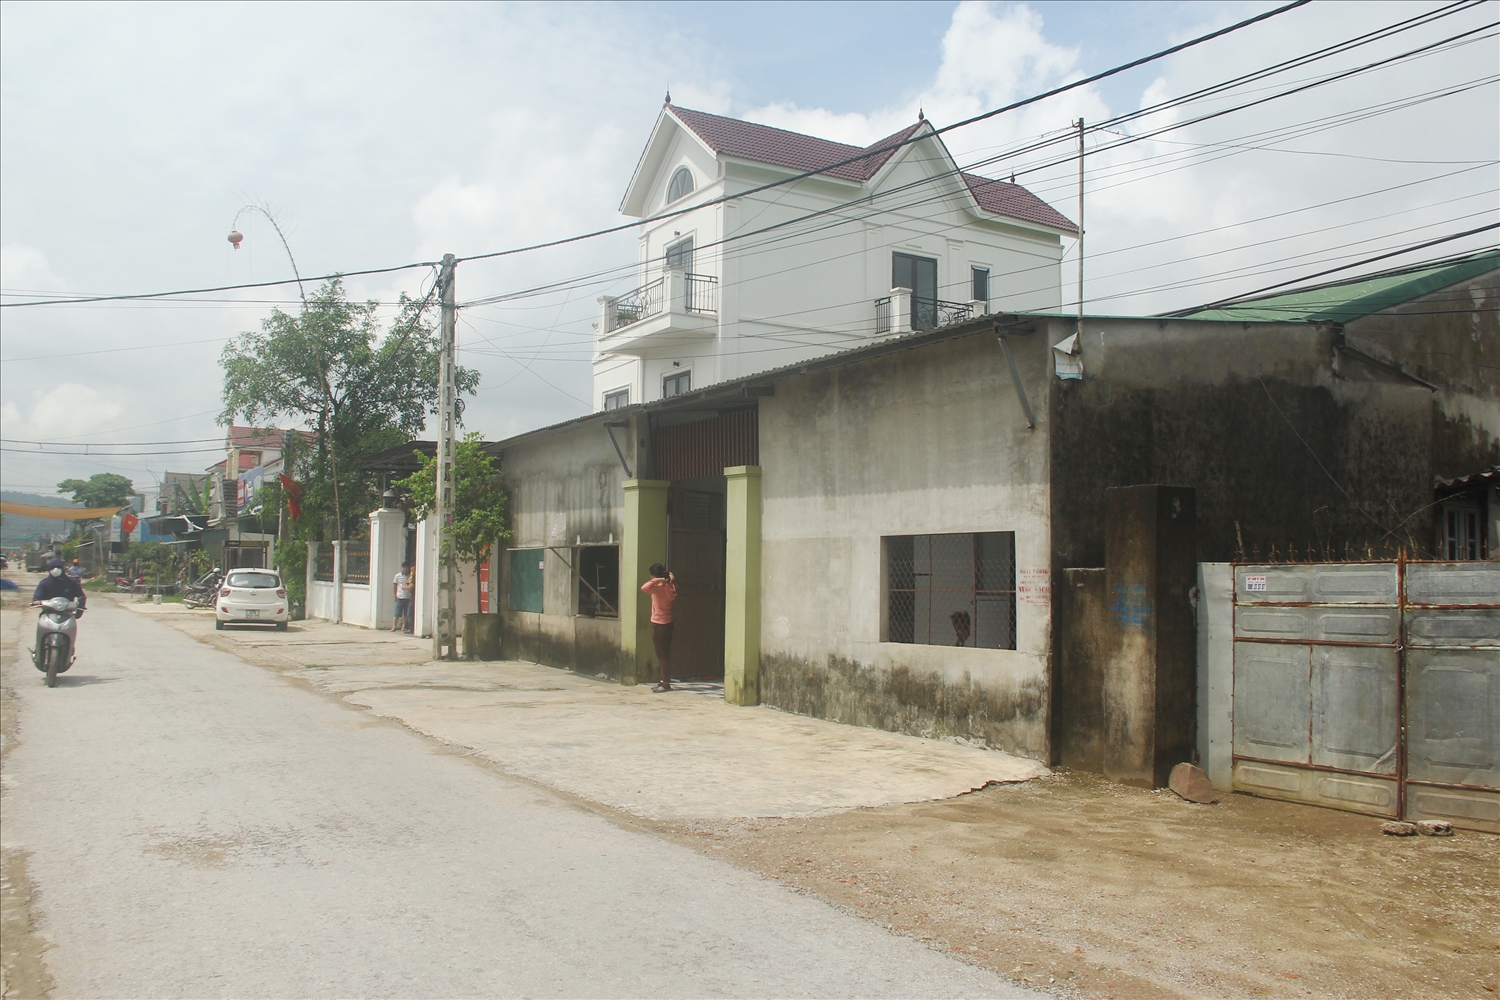 Ông Phạm Đình Tư và những hộ dân liền kề mua đất từ năm 1998, xây nhà kiên cố nhưng vẫn chưa được cấp bìa đỏ